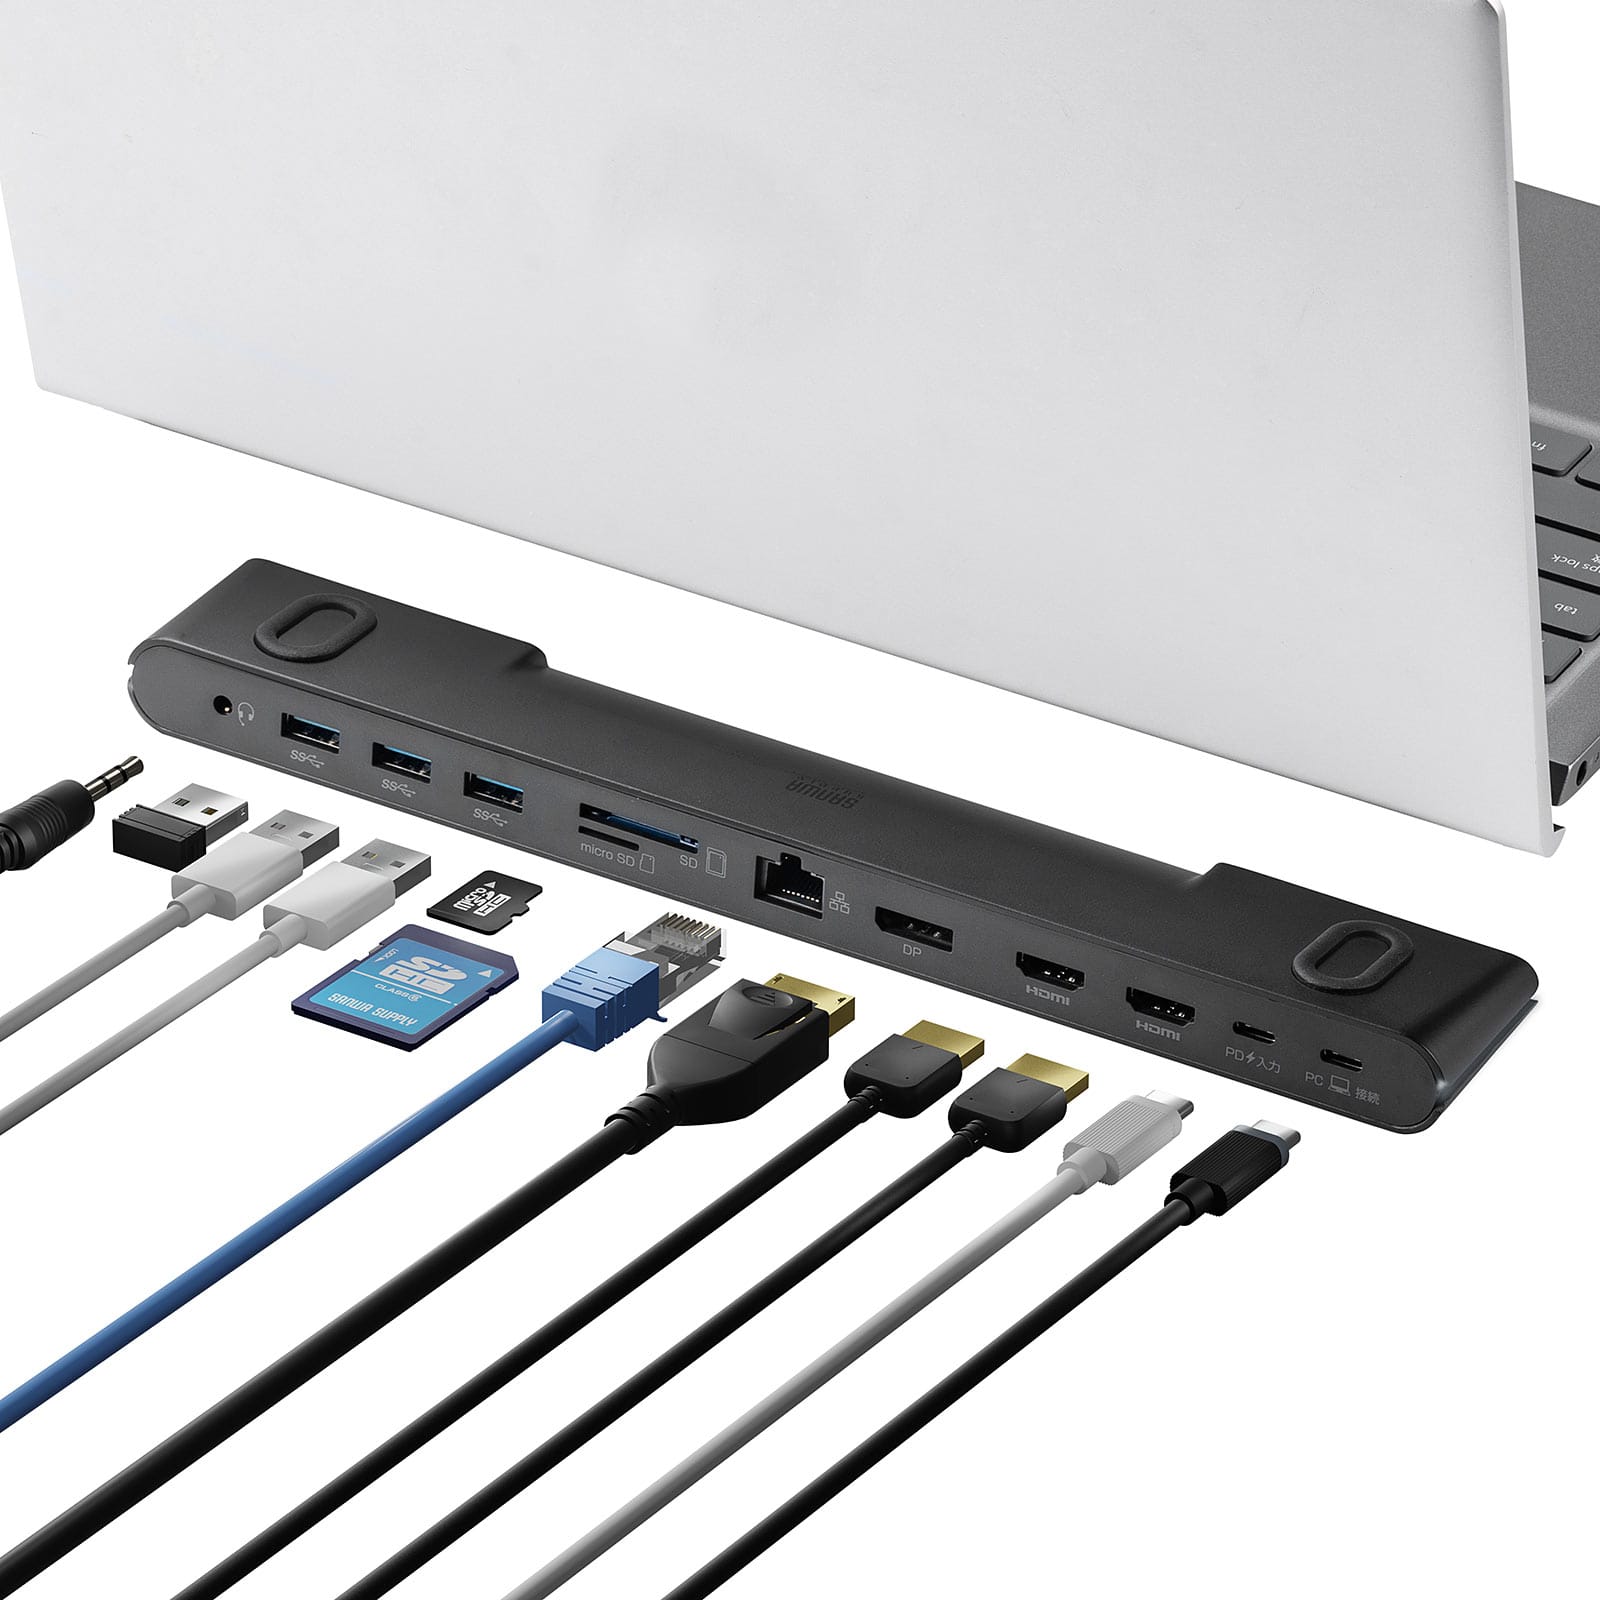 サンワサプライ、ノートPCスタンド型11-in-1 USB-Cドックを発売